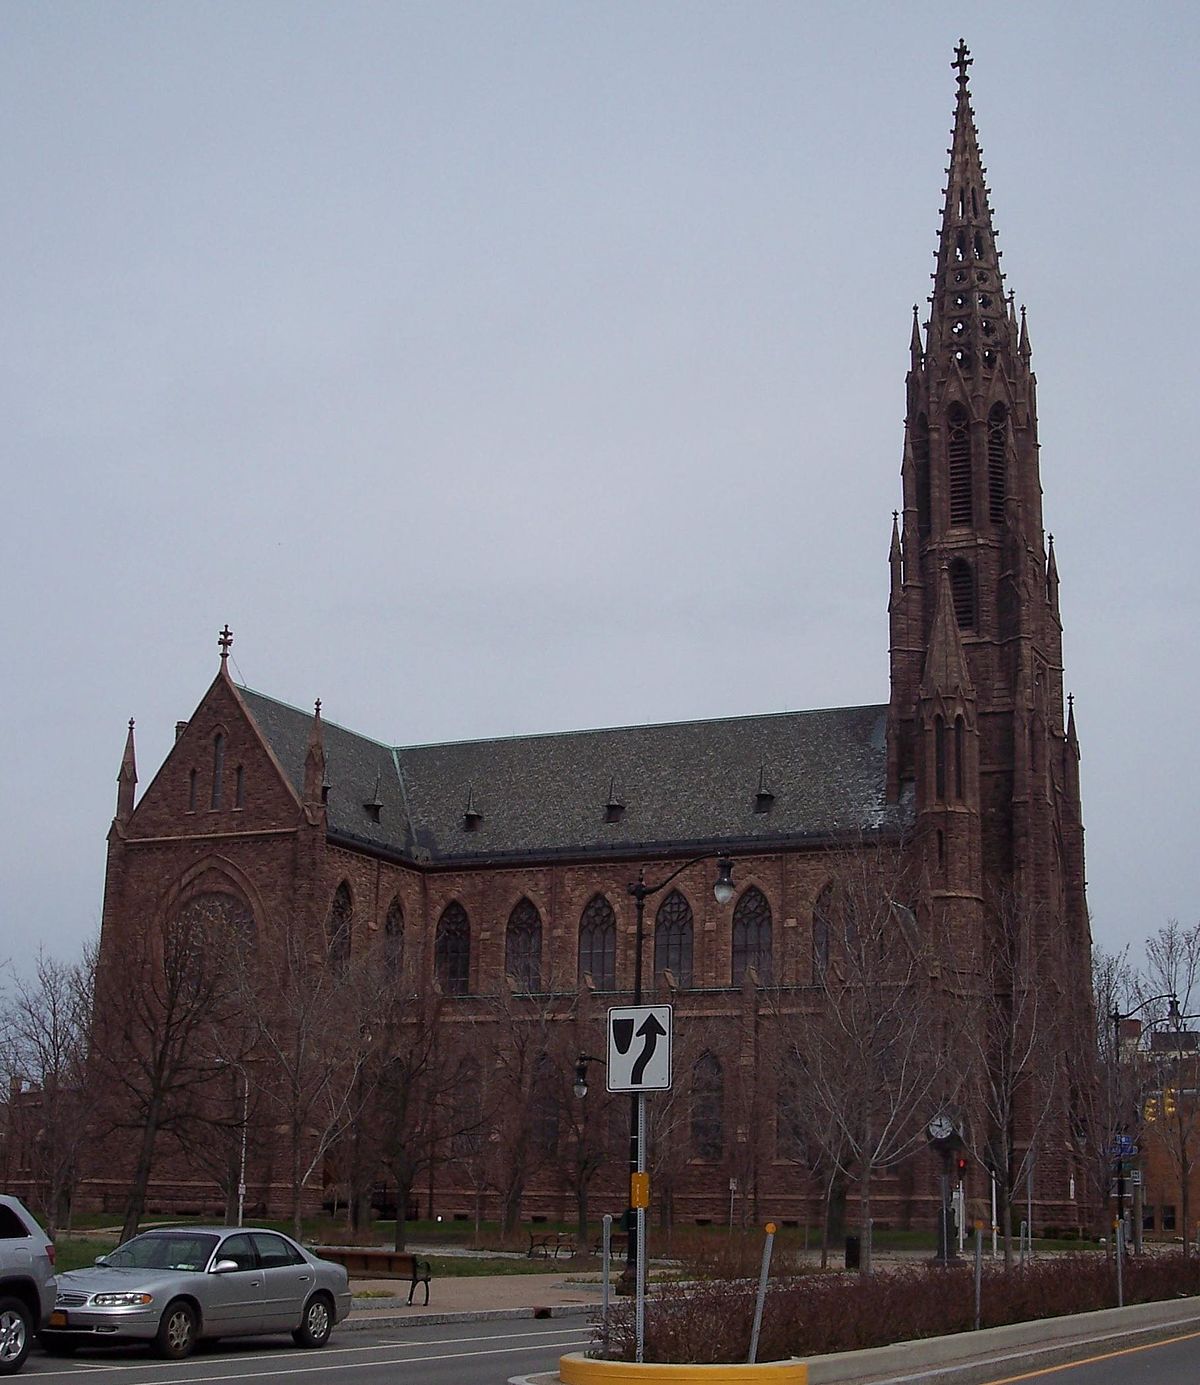 St. Louis Roman Catholic Church - Wikipedia